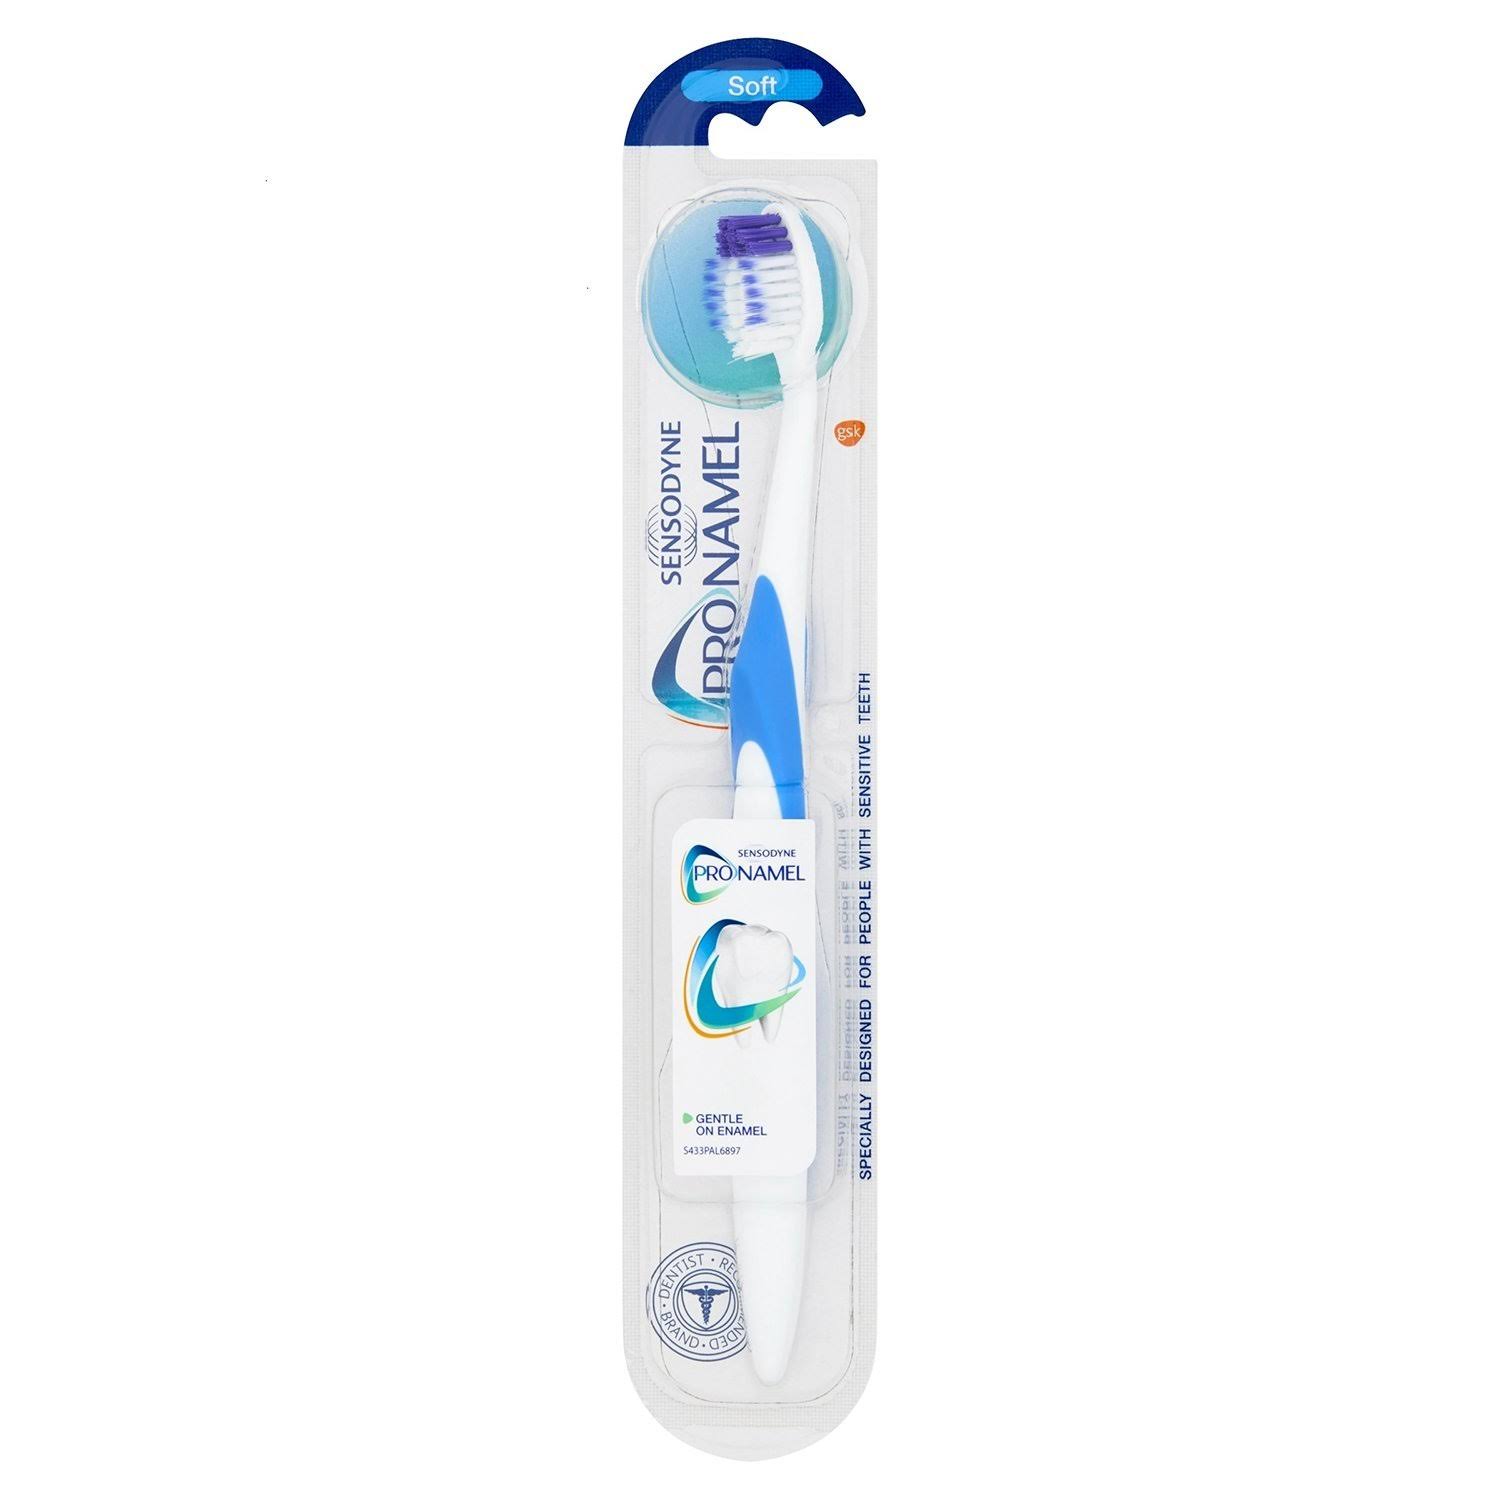 Sensodyne Pronamel Toothbrush - Soft